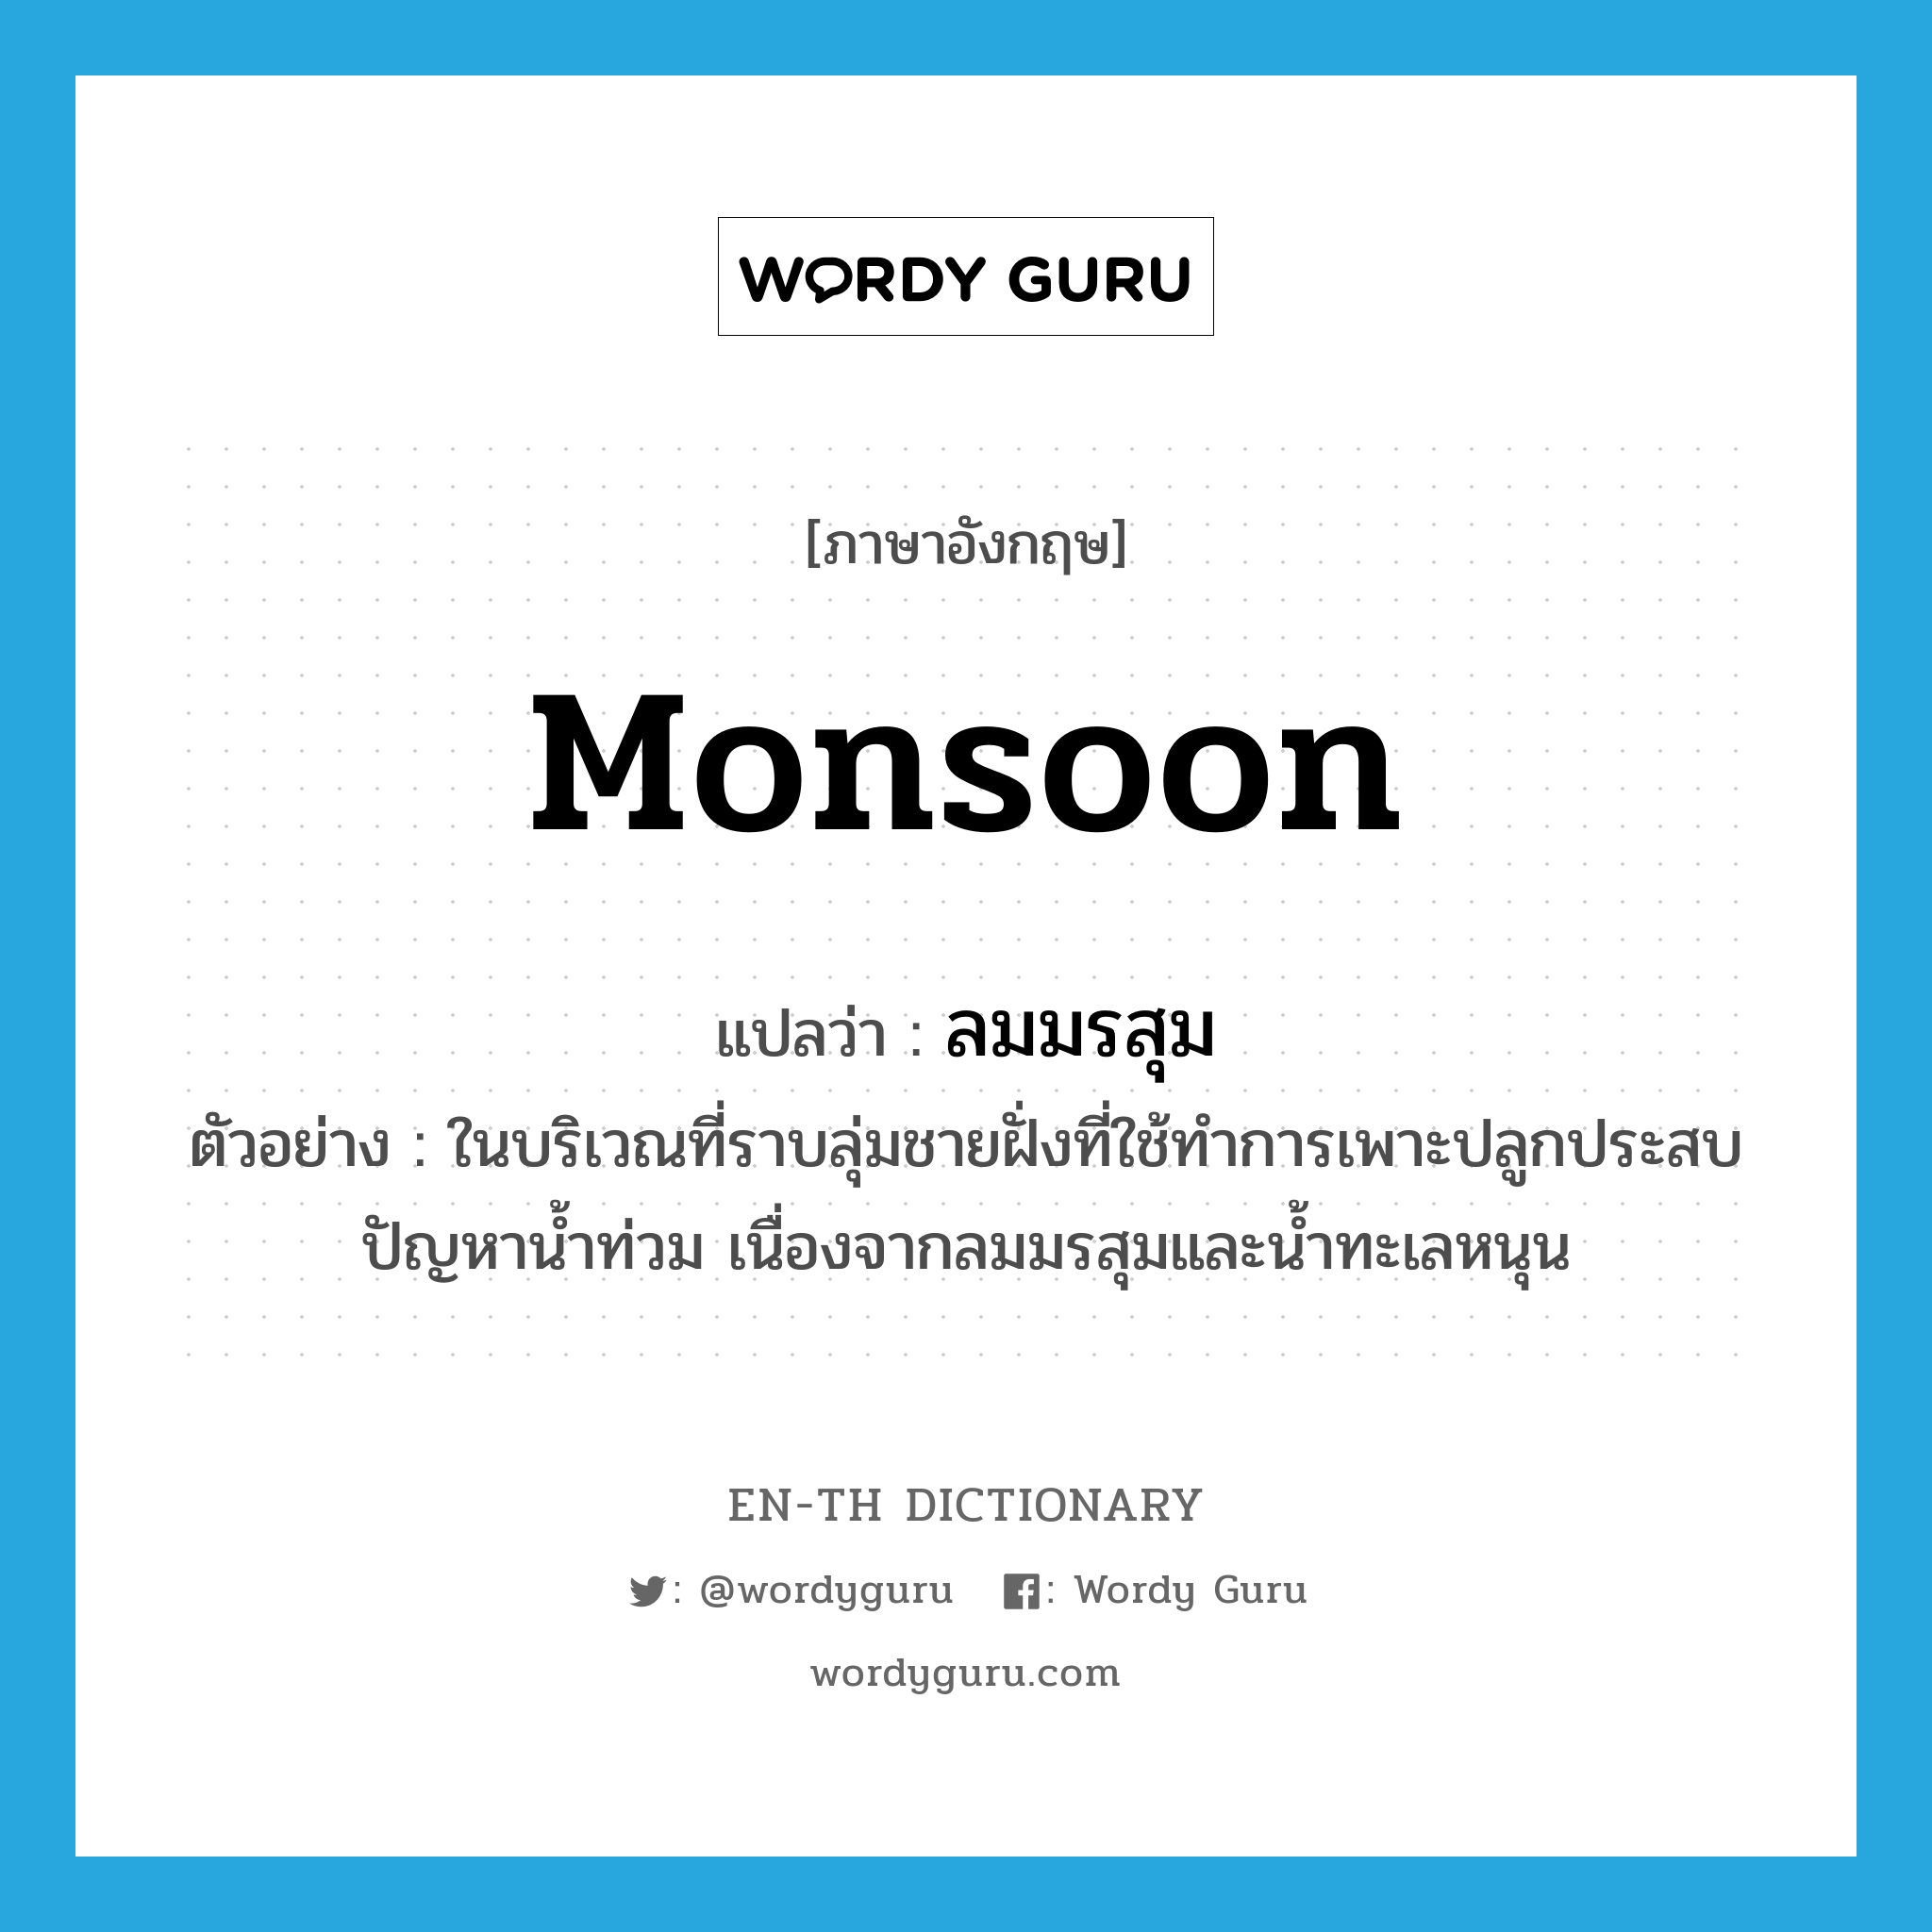 monsoon แปลว่า?, คำศัพท์ภาษาอังกฤษ monsoon แปลว่า ลมมรสุม ประเภท N ตัวอย่าง ในบริเวณที่ราบลุ่มชายฝั่งที่ใช้ทำการเพาะปลูกประสบปัญหาน้ำท่วม เนื่องจากลมมรสุมและน้ำทะเลหนุน หมวด N